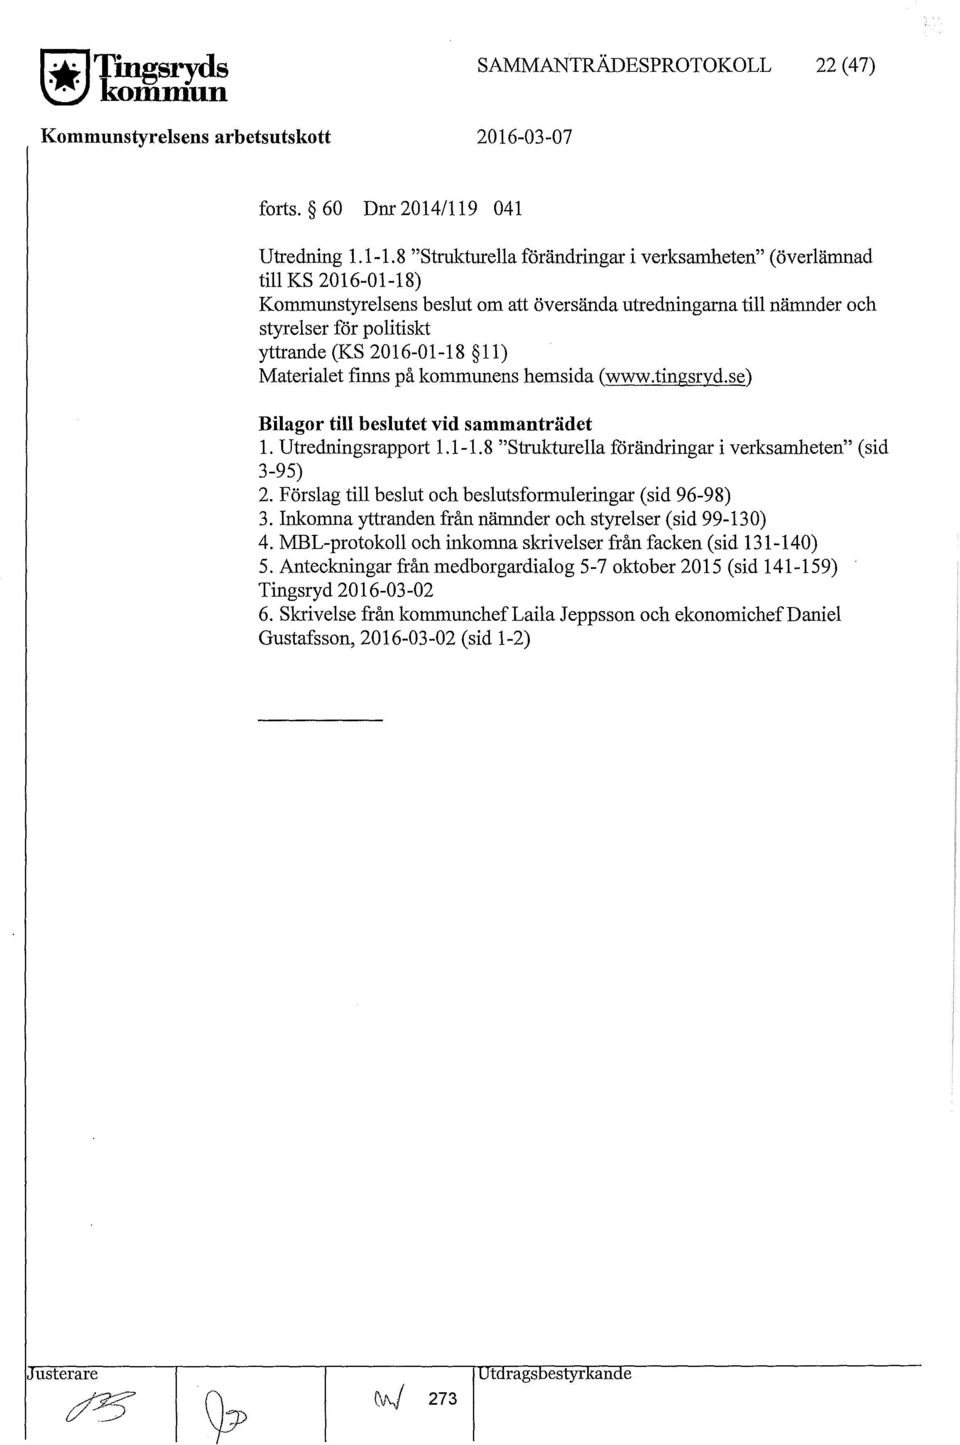 11) Materialet finns på kommunens hemsida (www.tingsryd.se) Bilagor till beslutet vid sammanträdet 1. Utredningsrapport 1.1-1. 8 "Strukturella förändringar i verksamheten" ( sid 3-95) 2.